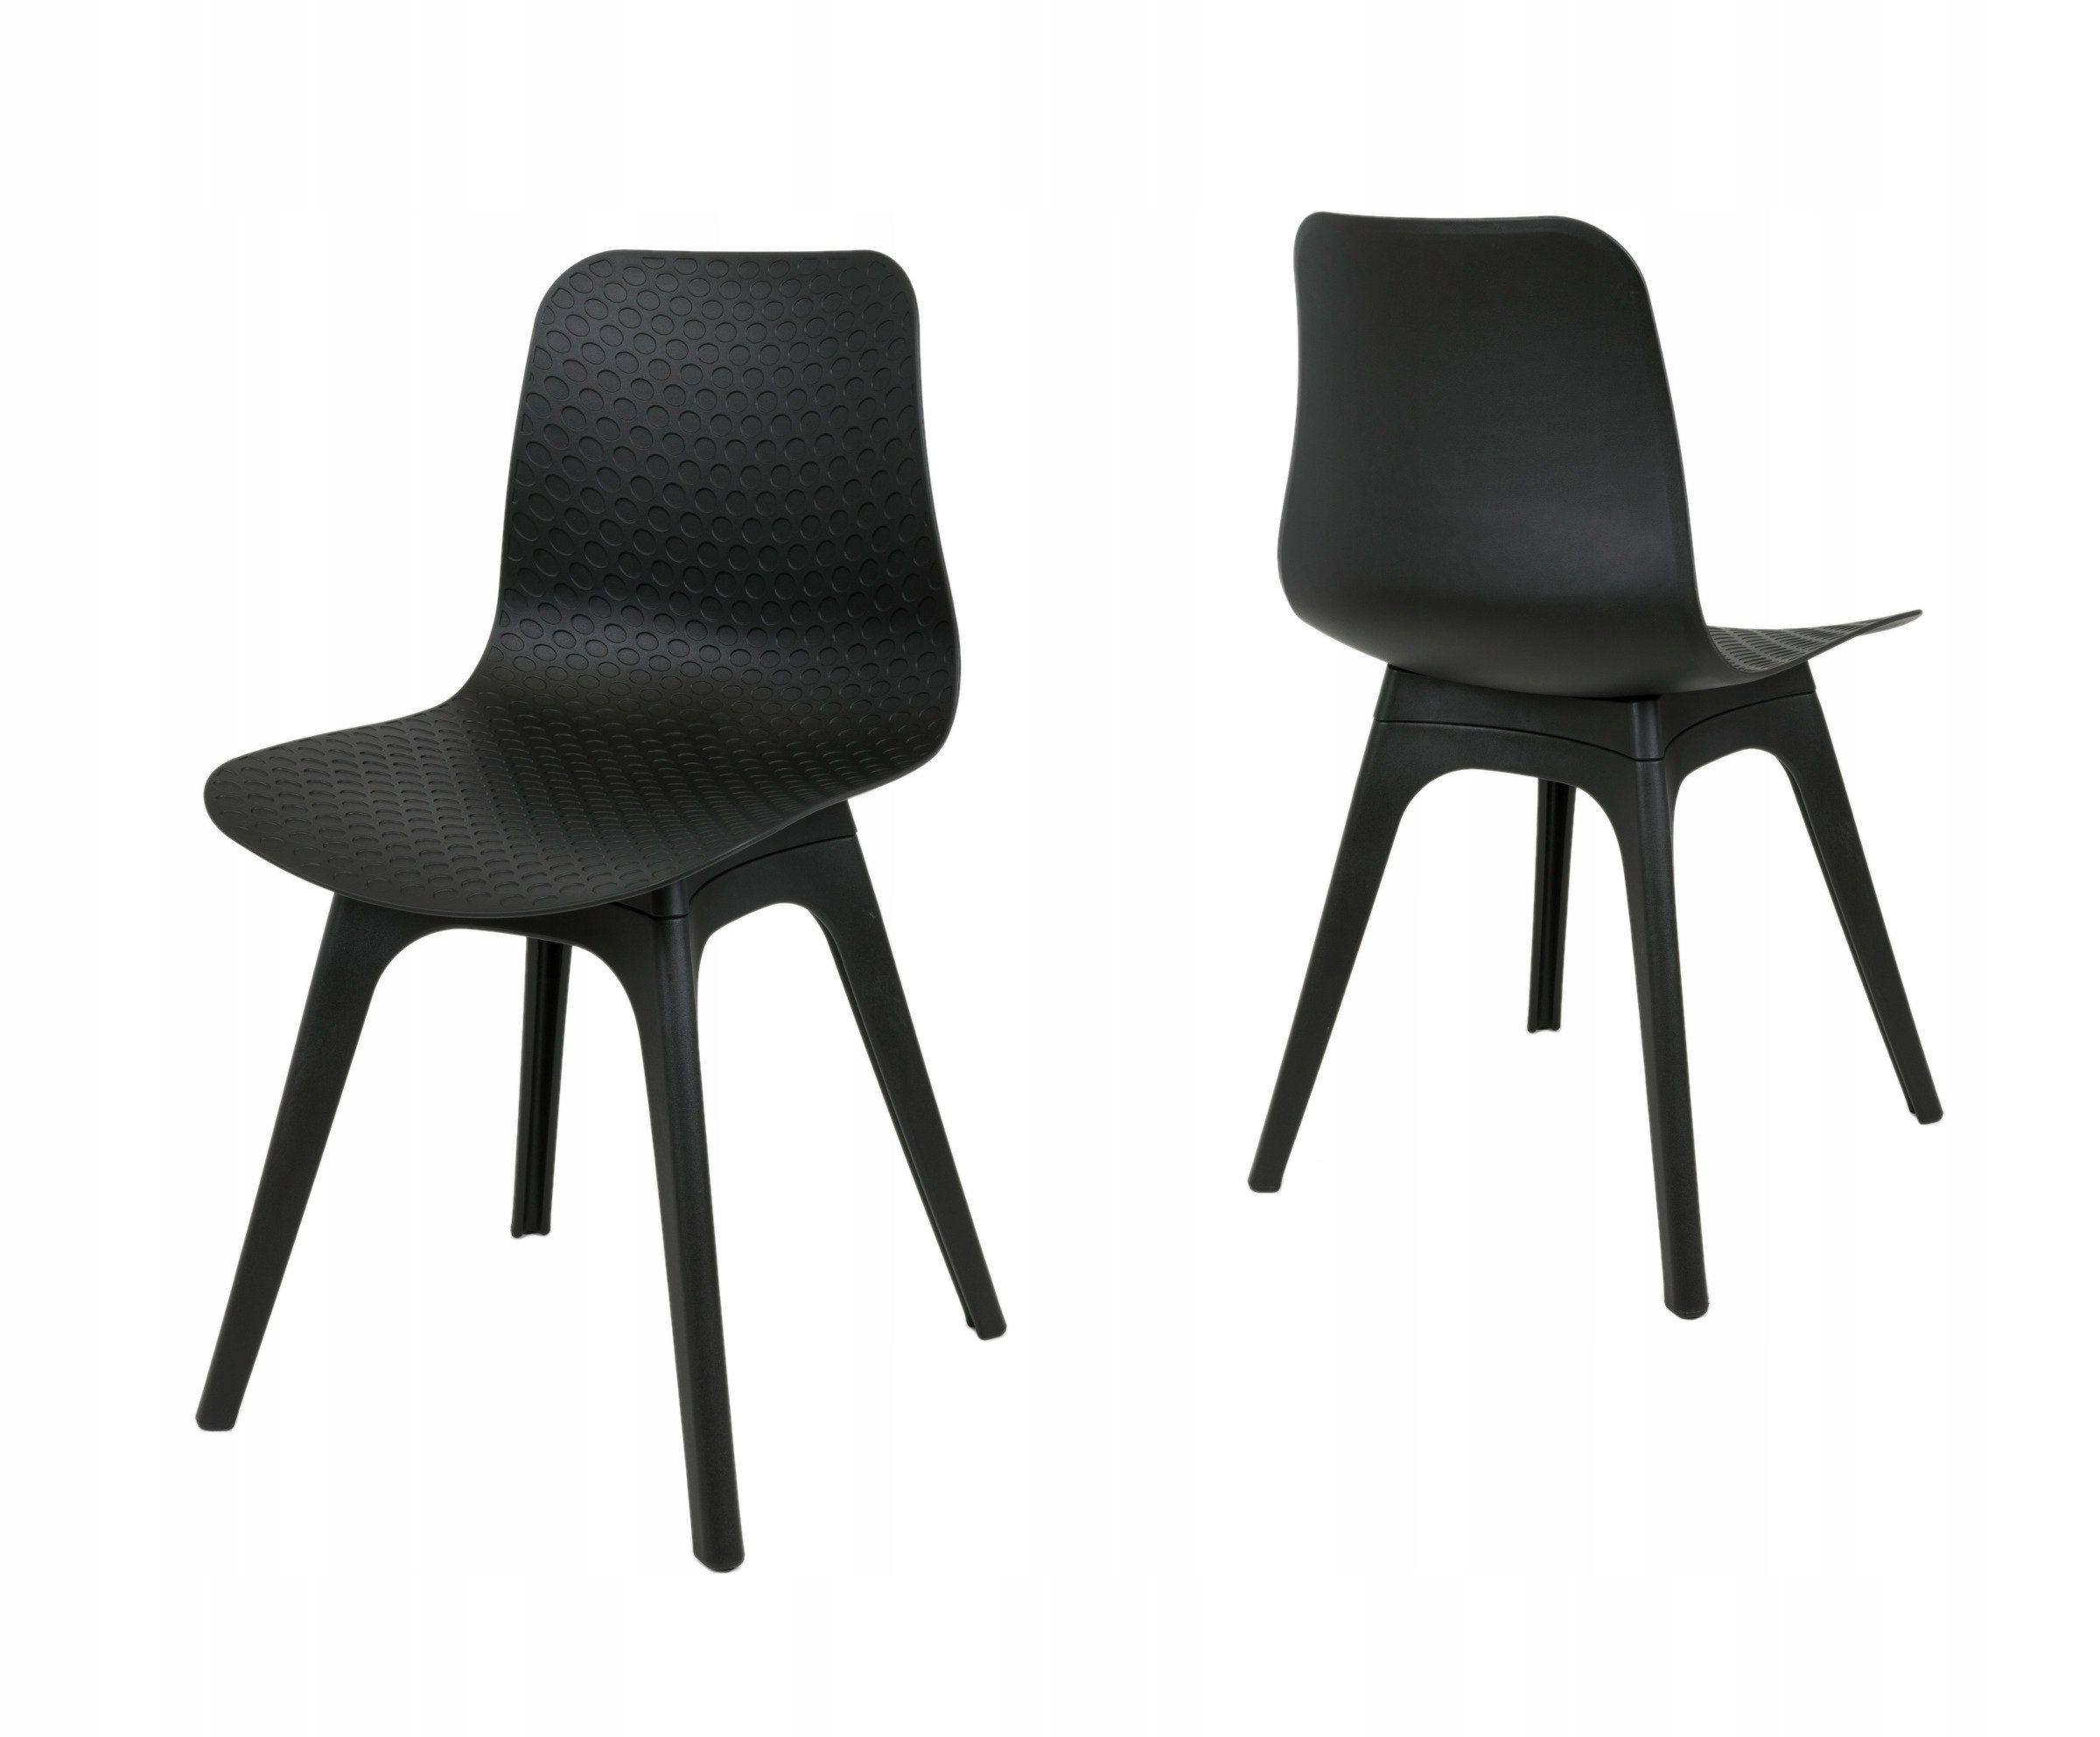 окрашивание стула в черный цвет